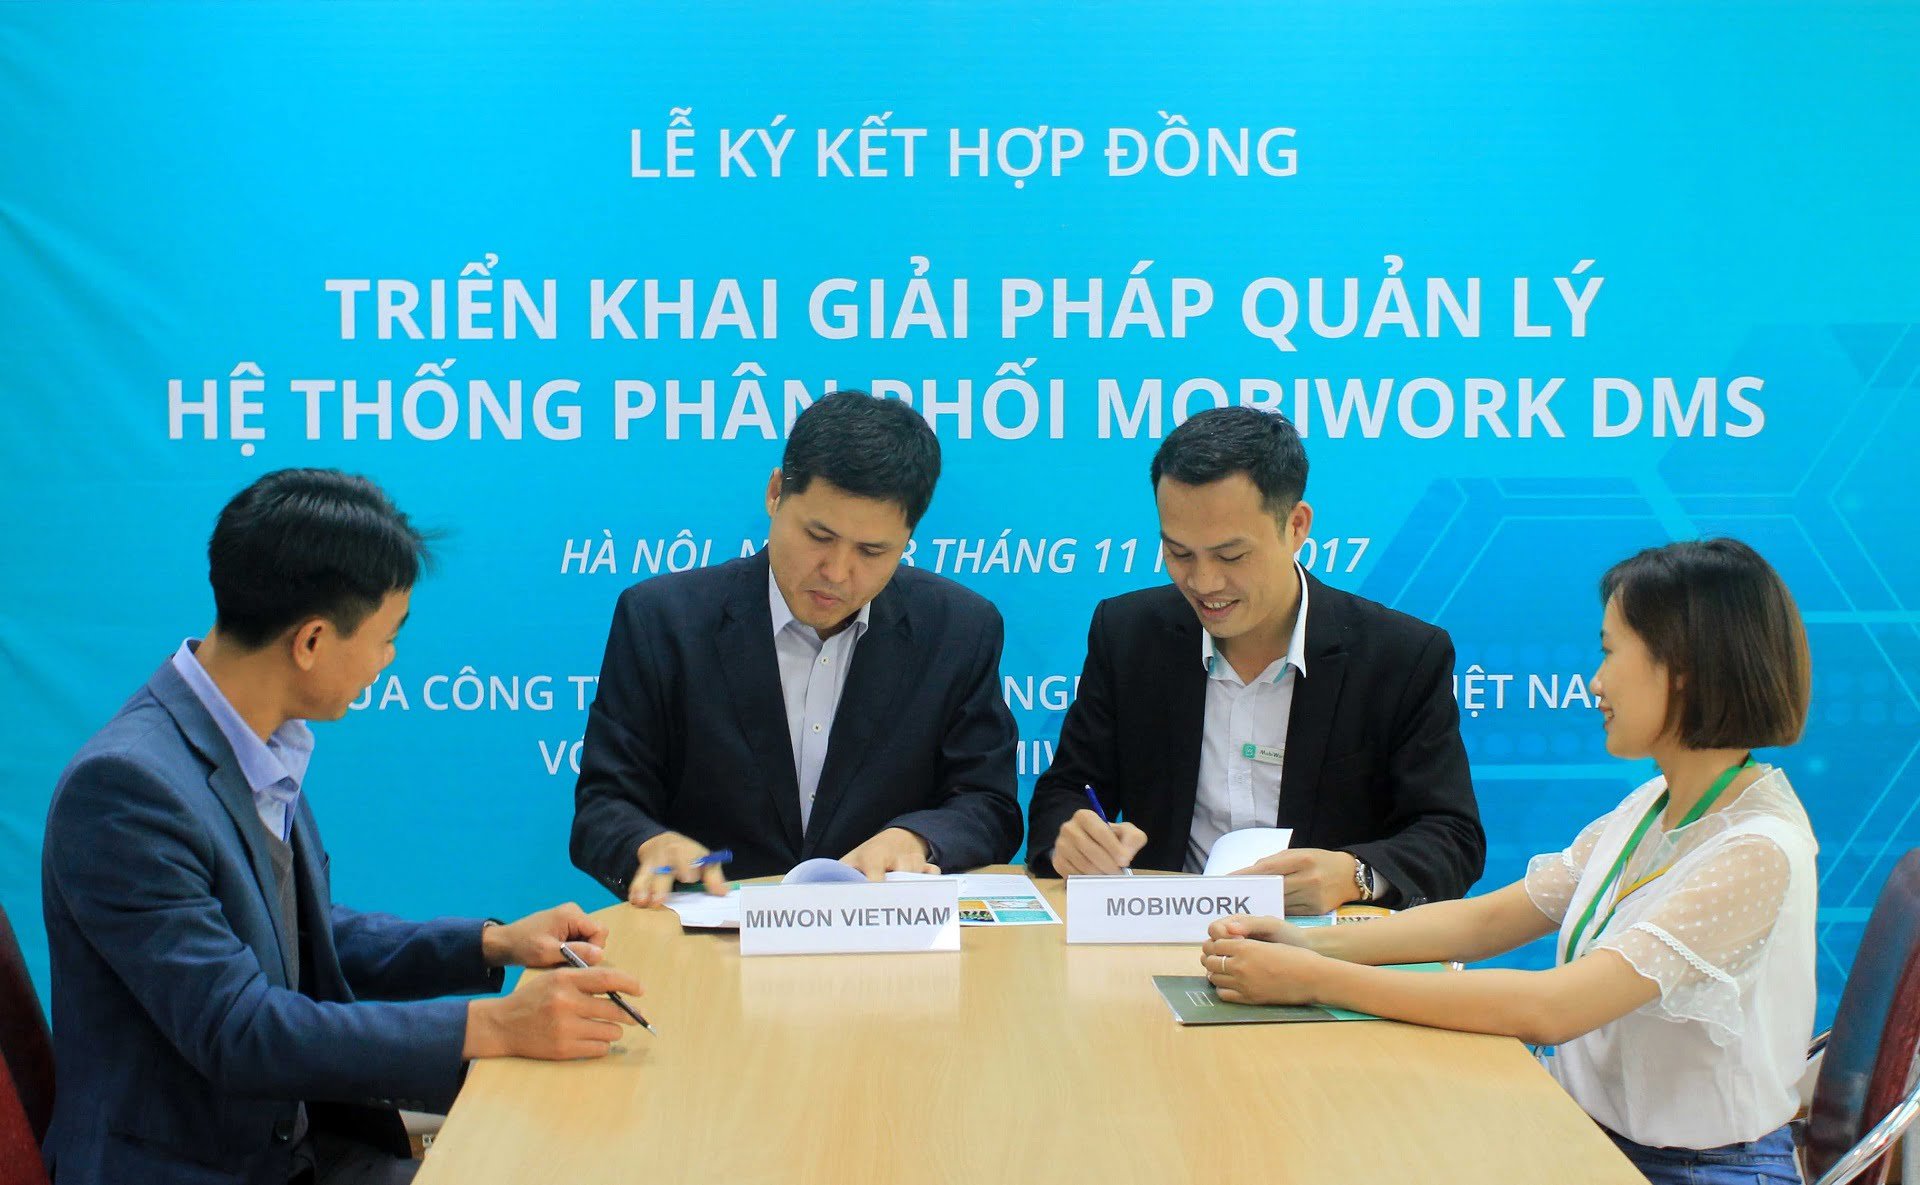 Mr.Jung Im Jeong (trái) - Giám đốc kinh doanh Miwon Việt Nam ký kết hợp đồng triển khai phần mềm dms